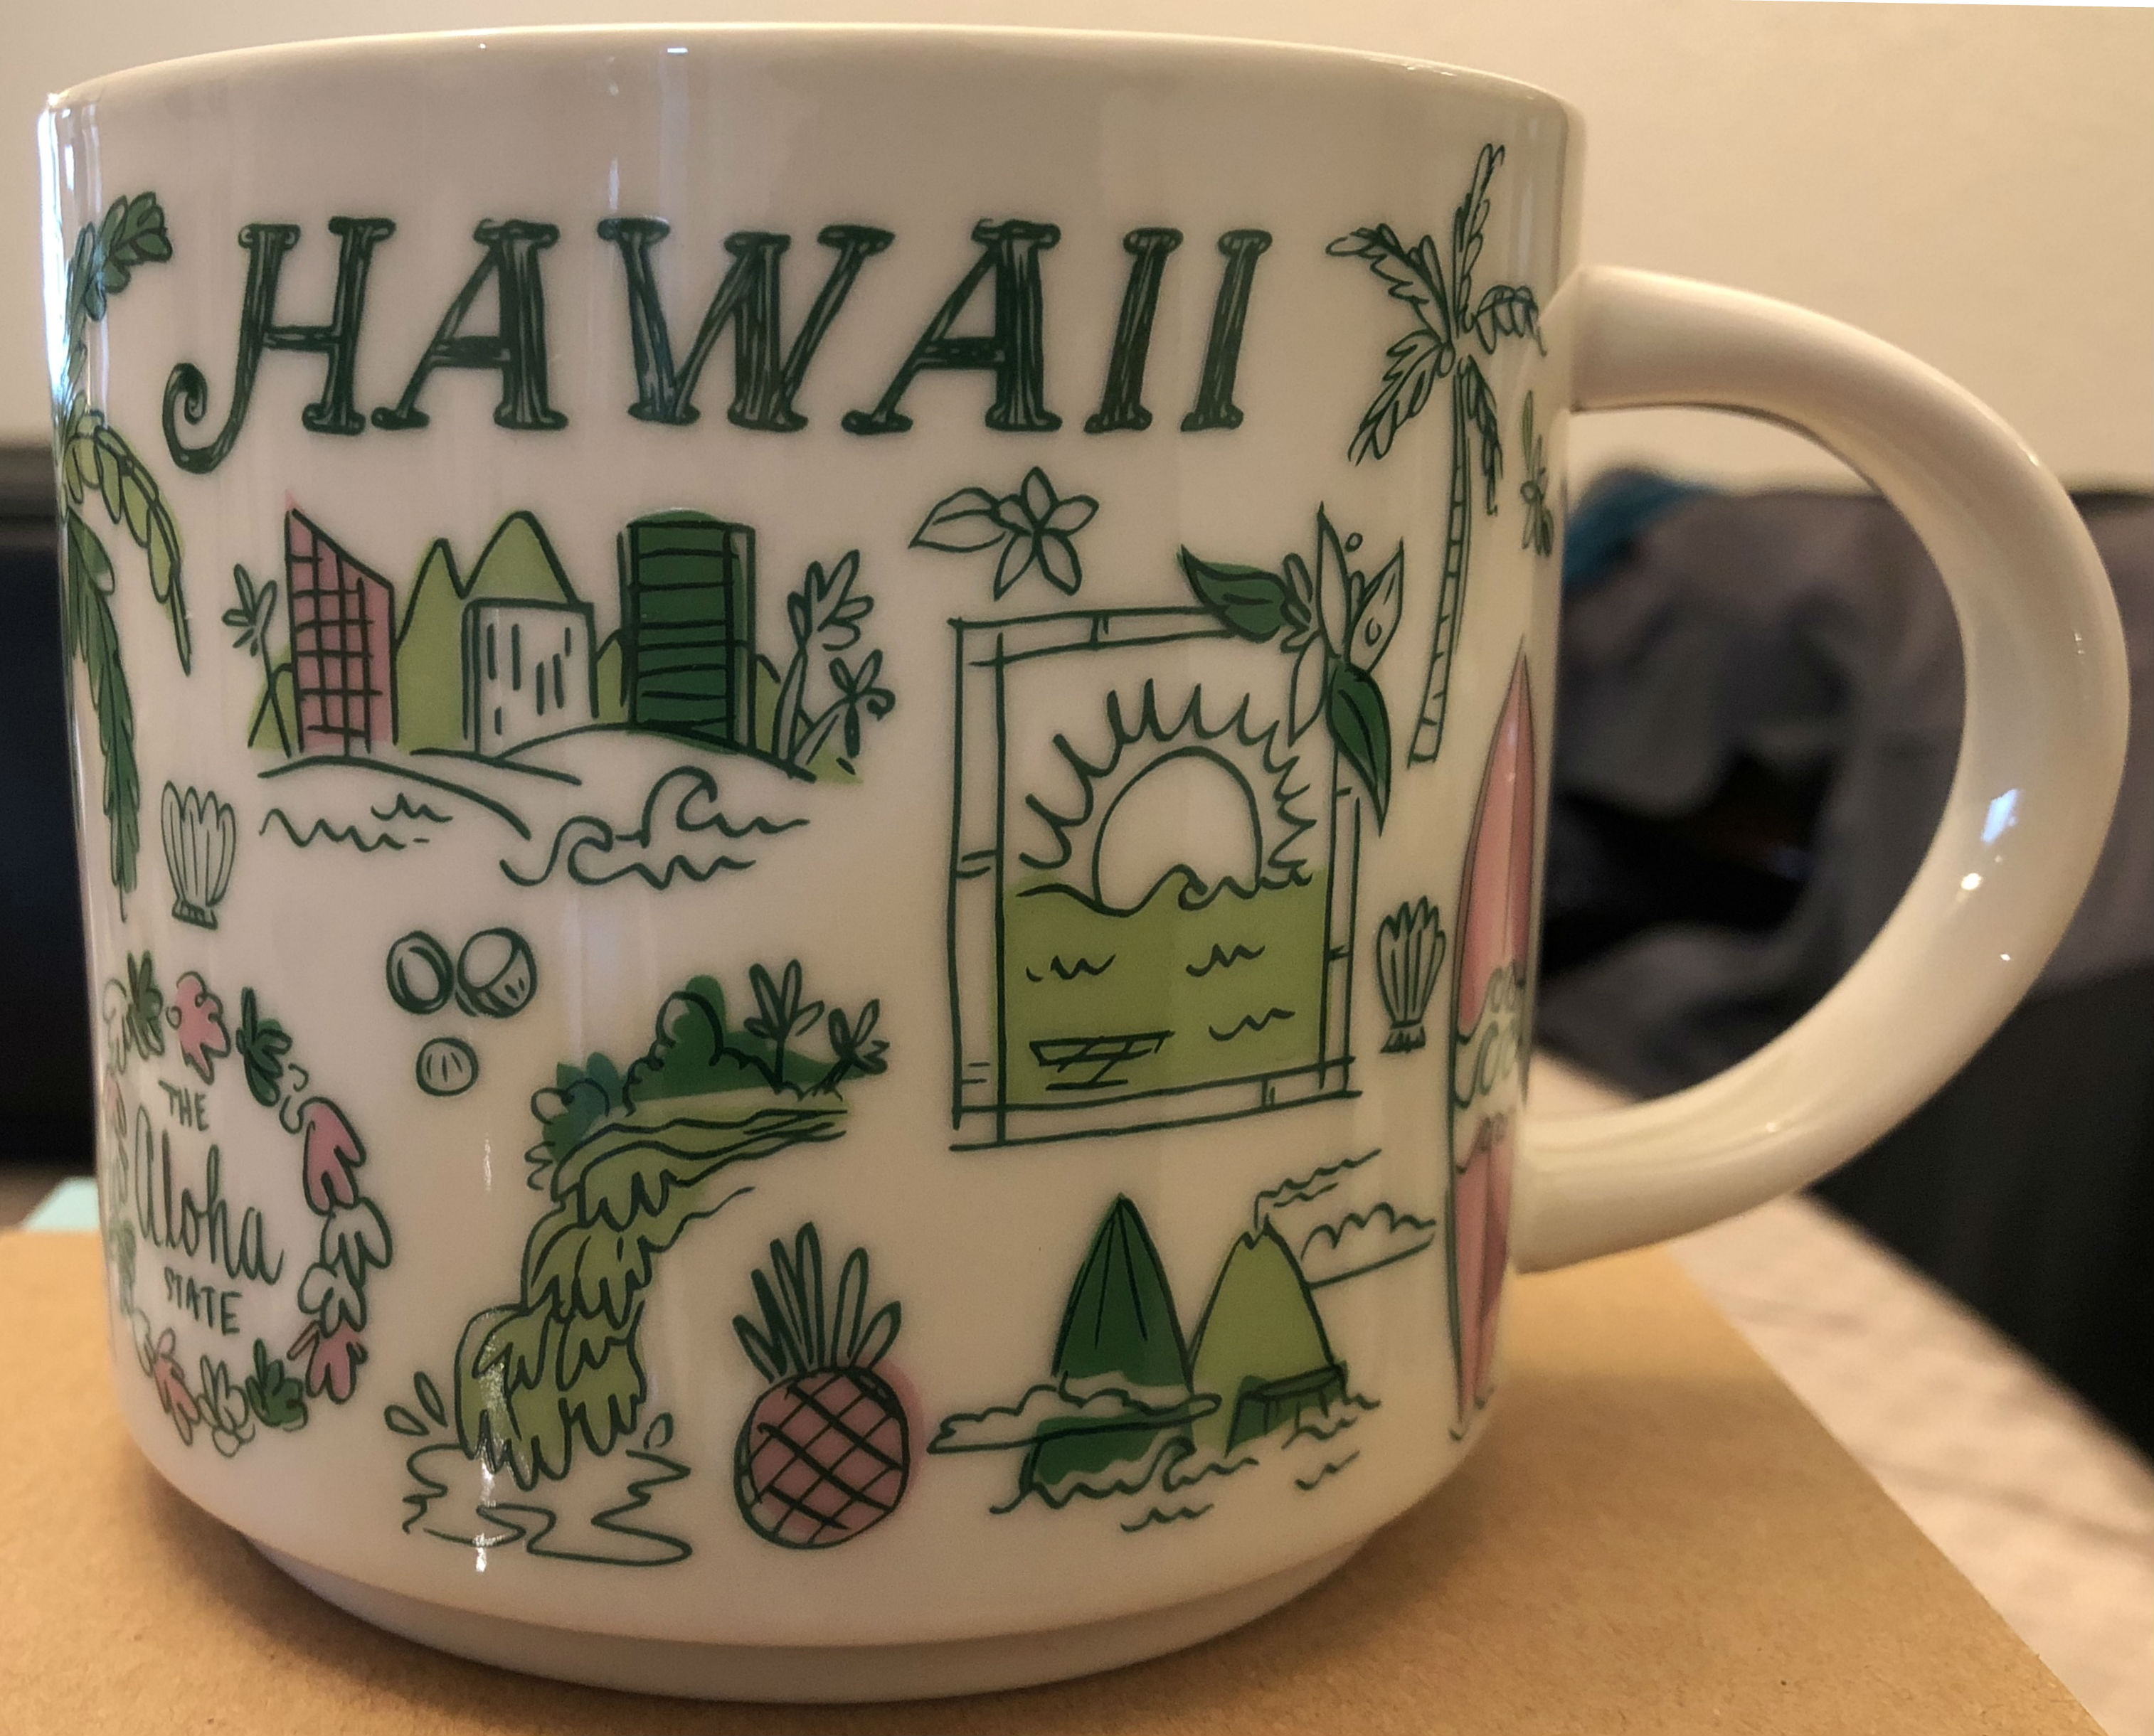 https://starbucks-mugs.com/wp-content/uploads/2018/03/bt_hawaii.jpg